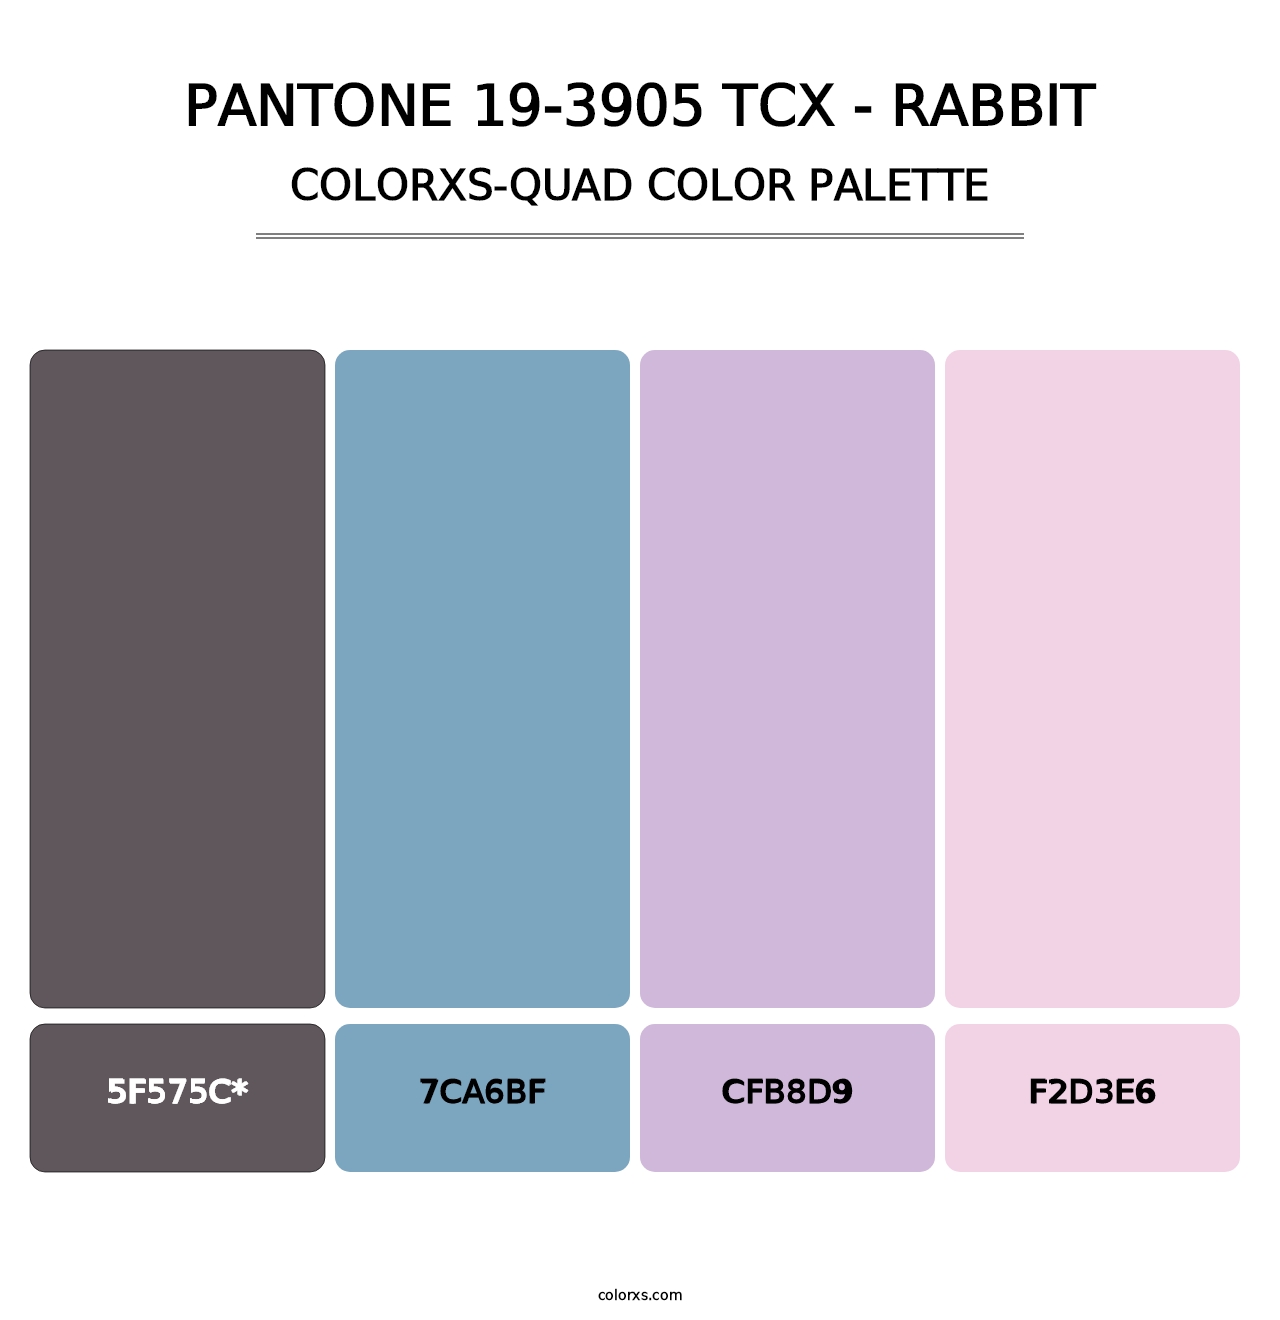 PANTONE 19-3905 TCX - Rabbit - Colorxs Quad Palette